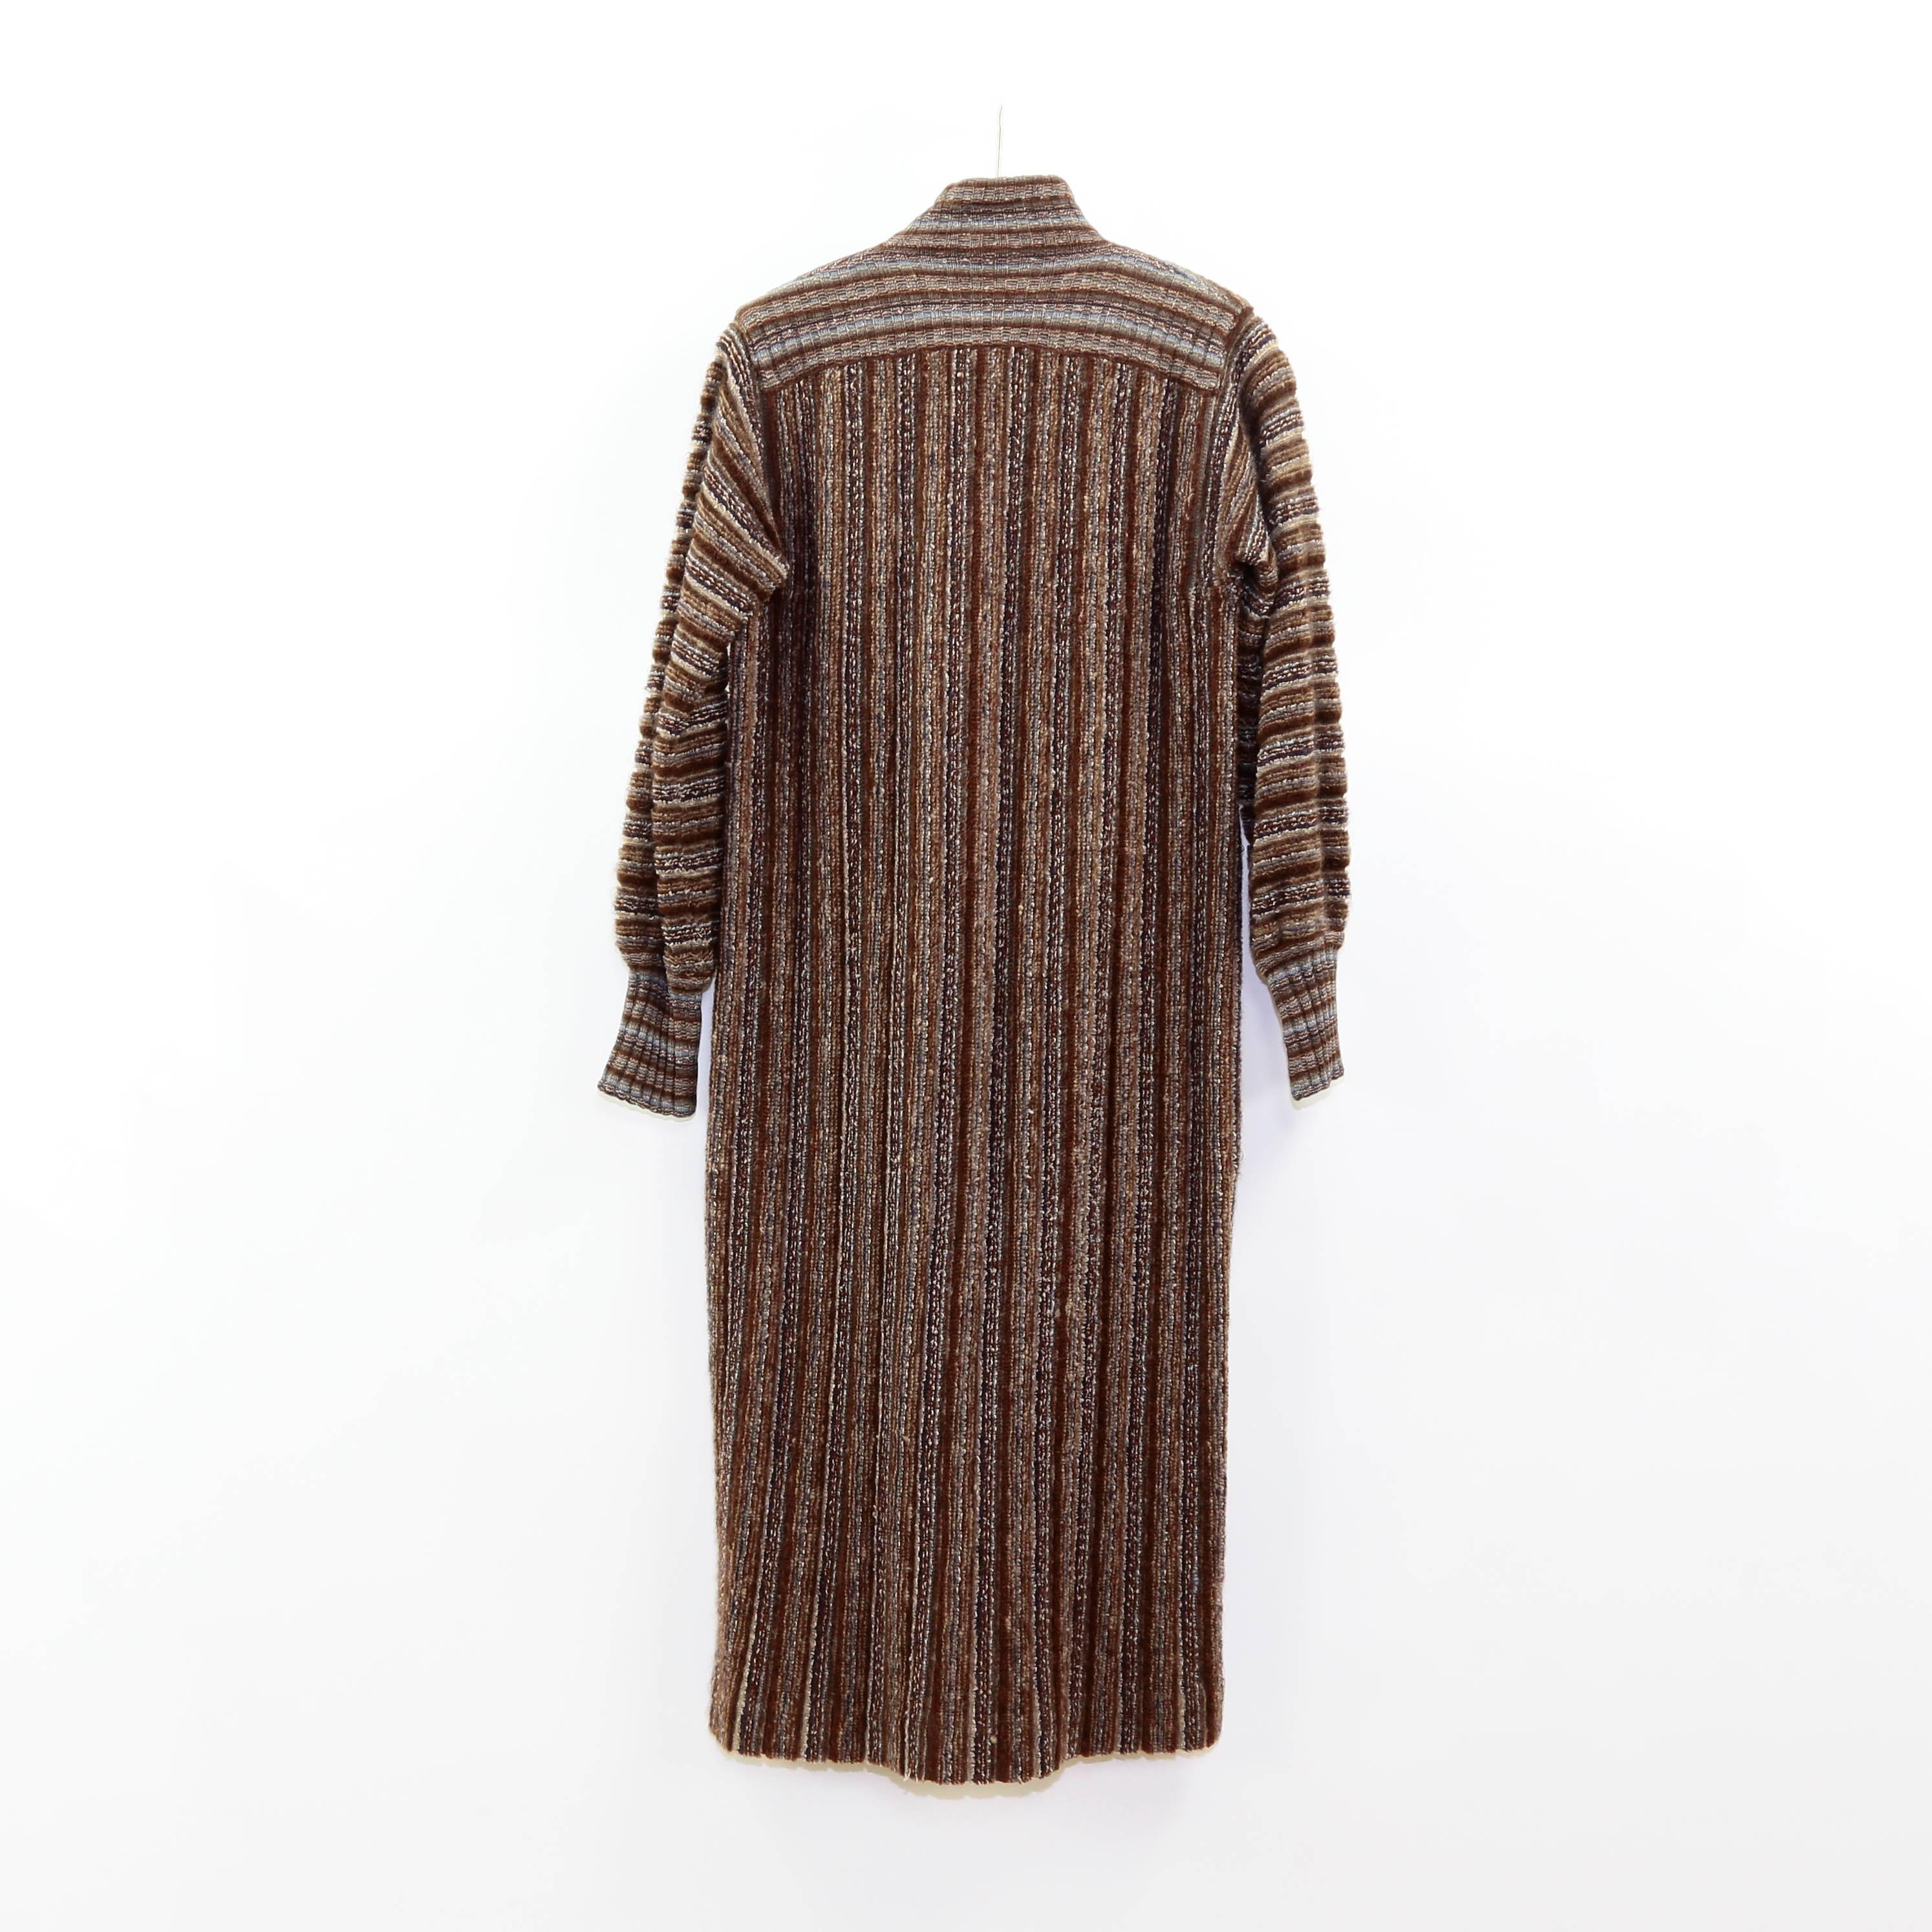 Manteau Missoni pour femme, en laine vierge italienne, avec un motif rayé en tricot de couleur marron, beige, crème et bleu ; fermeture par boutons sur le devant ; boutons recouverts ; 100% pure laine vierge. Parfait pour l'automne et l'hiver ; Une